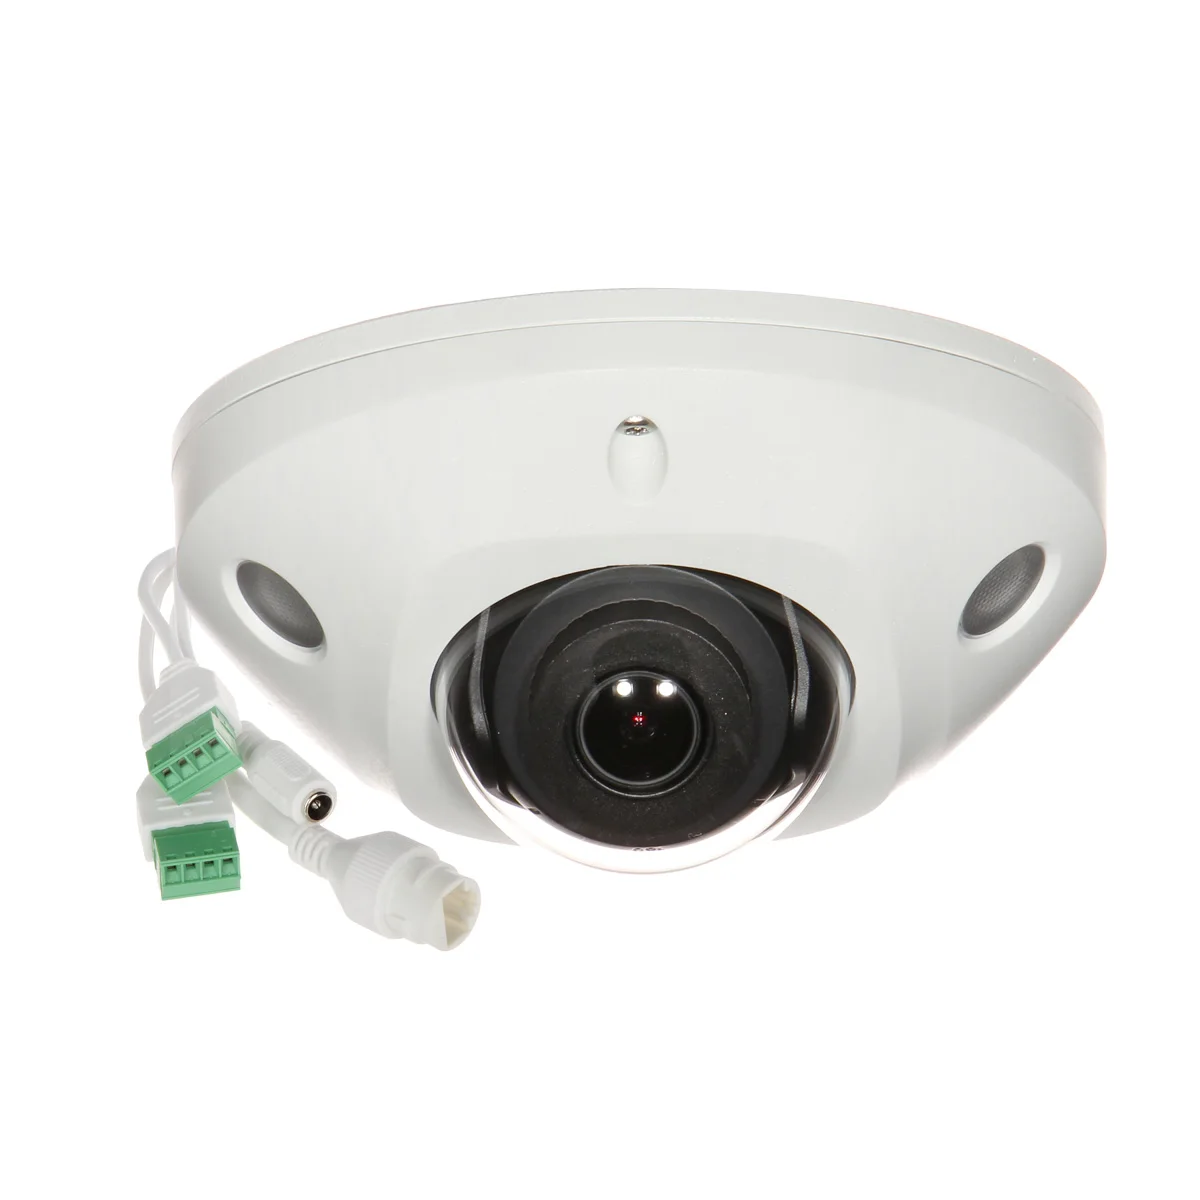 IR/visión nocturna/IP65 Impermeable/Advertencia Deportiva/cámara de Seguridad cámara de vigilancia WiFi cámara HD 1080P para Exteriores Cámara Domo IP PTZ para Exteriores/Garaje/Empresa Yoosee